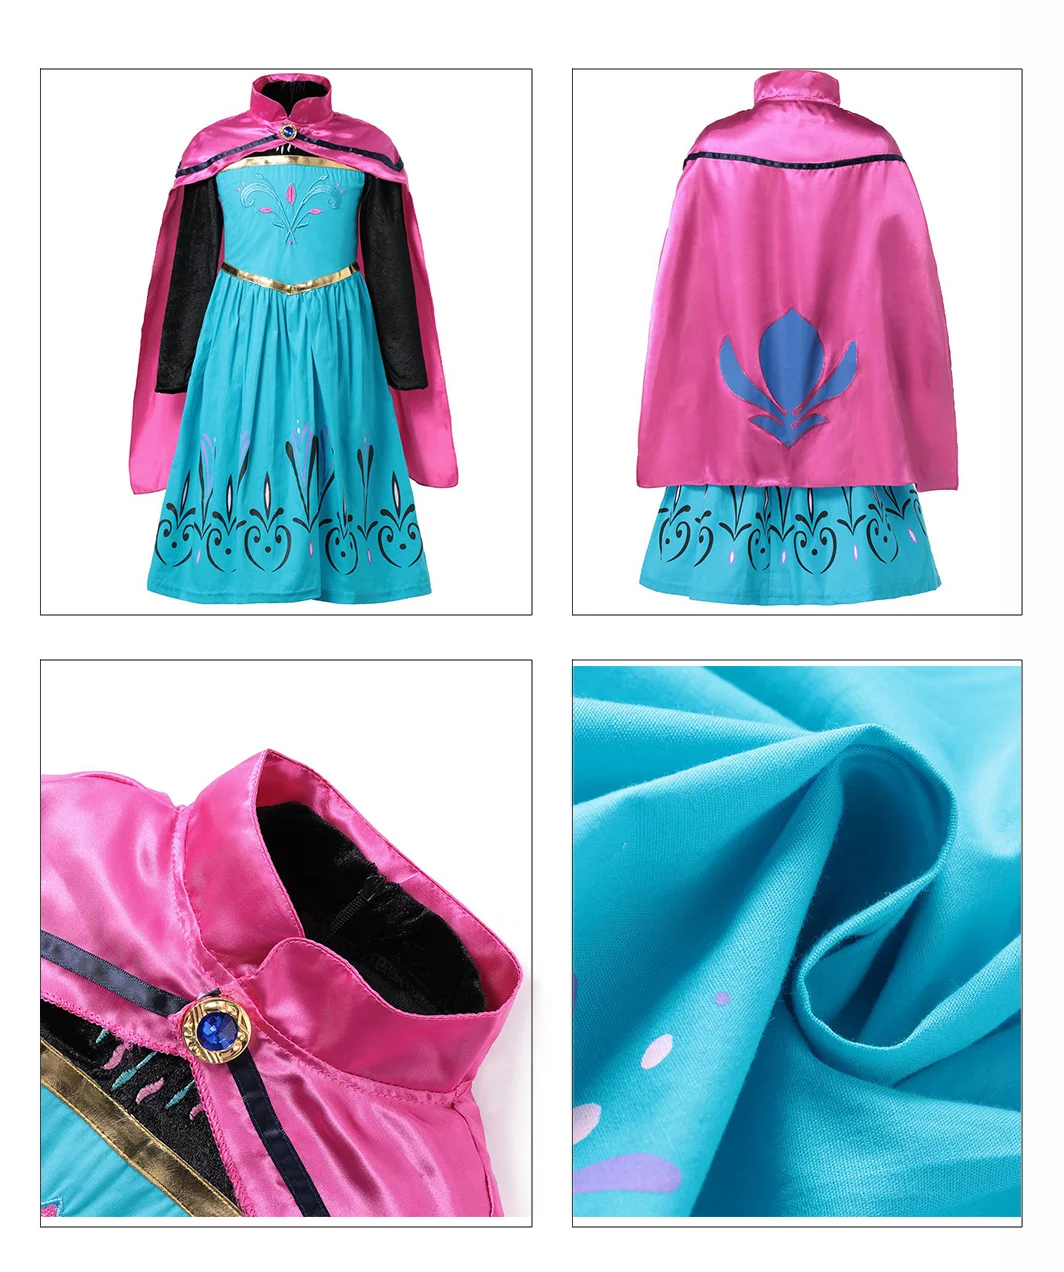 MUABABY/нарядный костюм принцессы Анны и Эльзы для девочек; детские Новые Вечерние платья Снежной Королевы на Хэллоуин, карнавал; Одежда для девочек